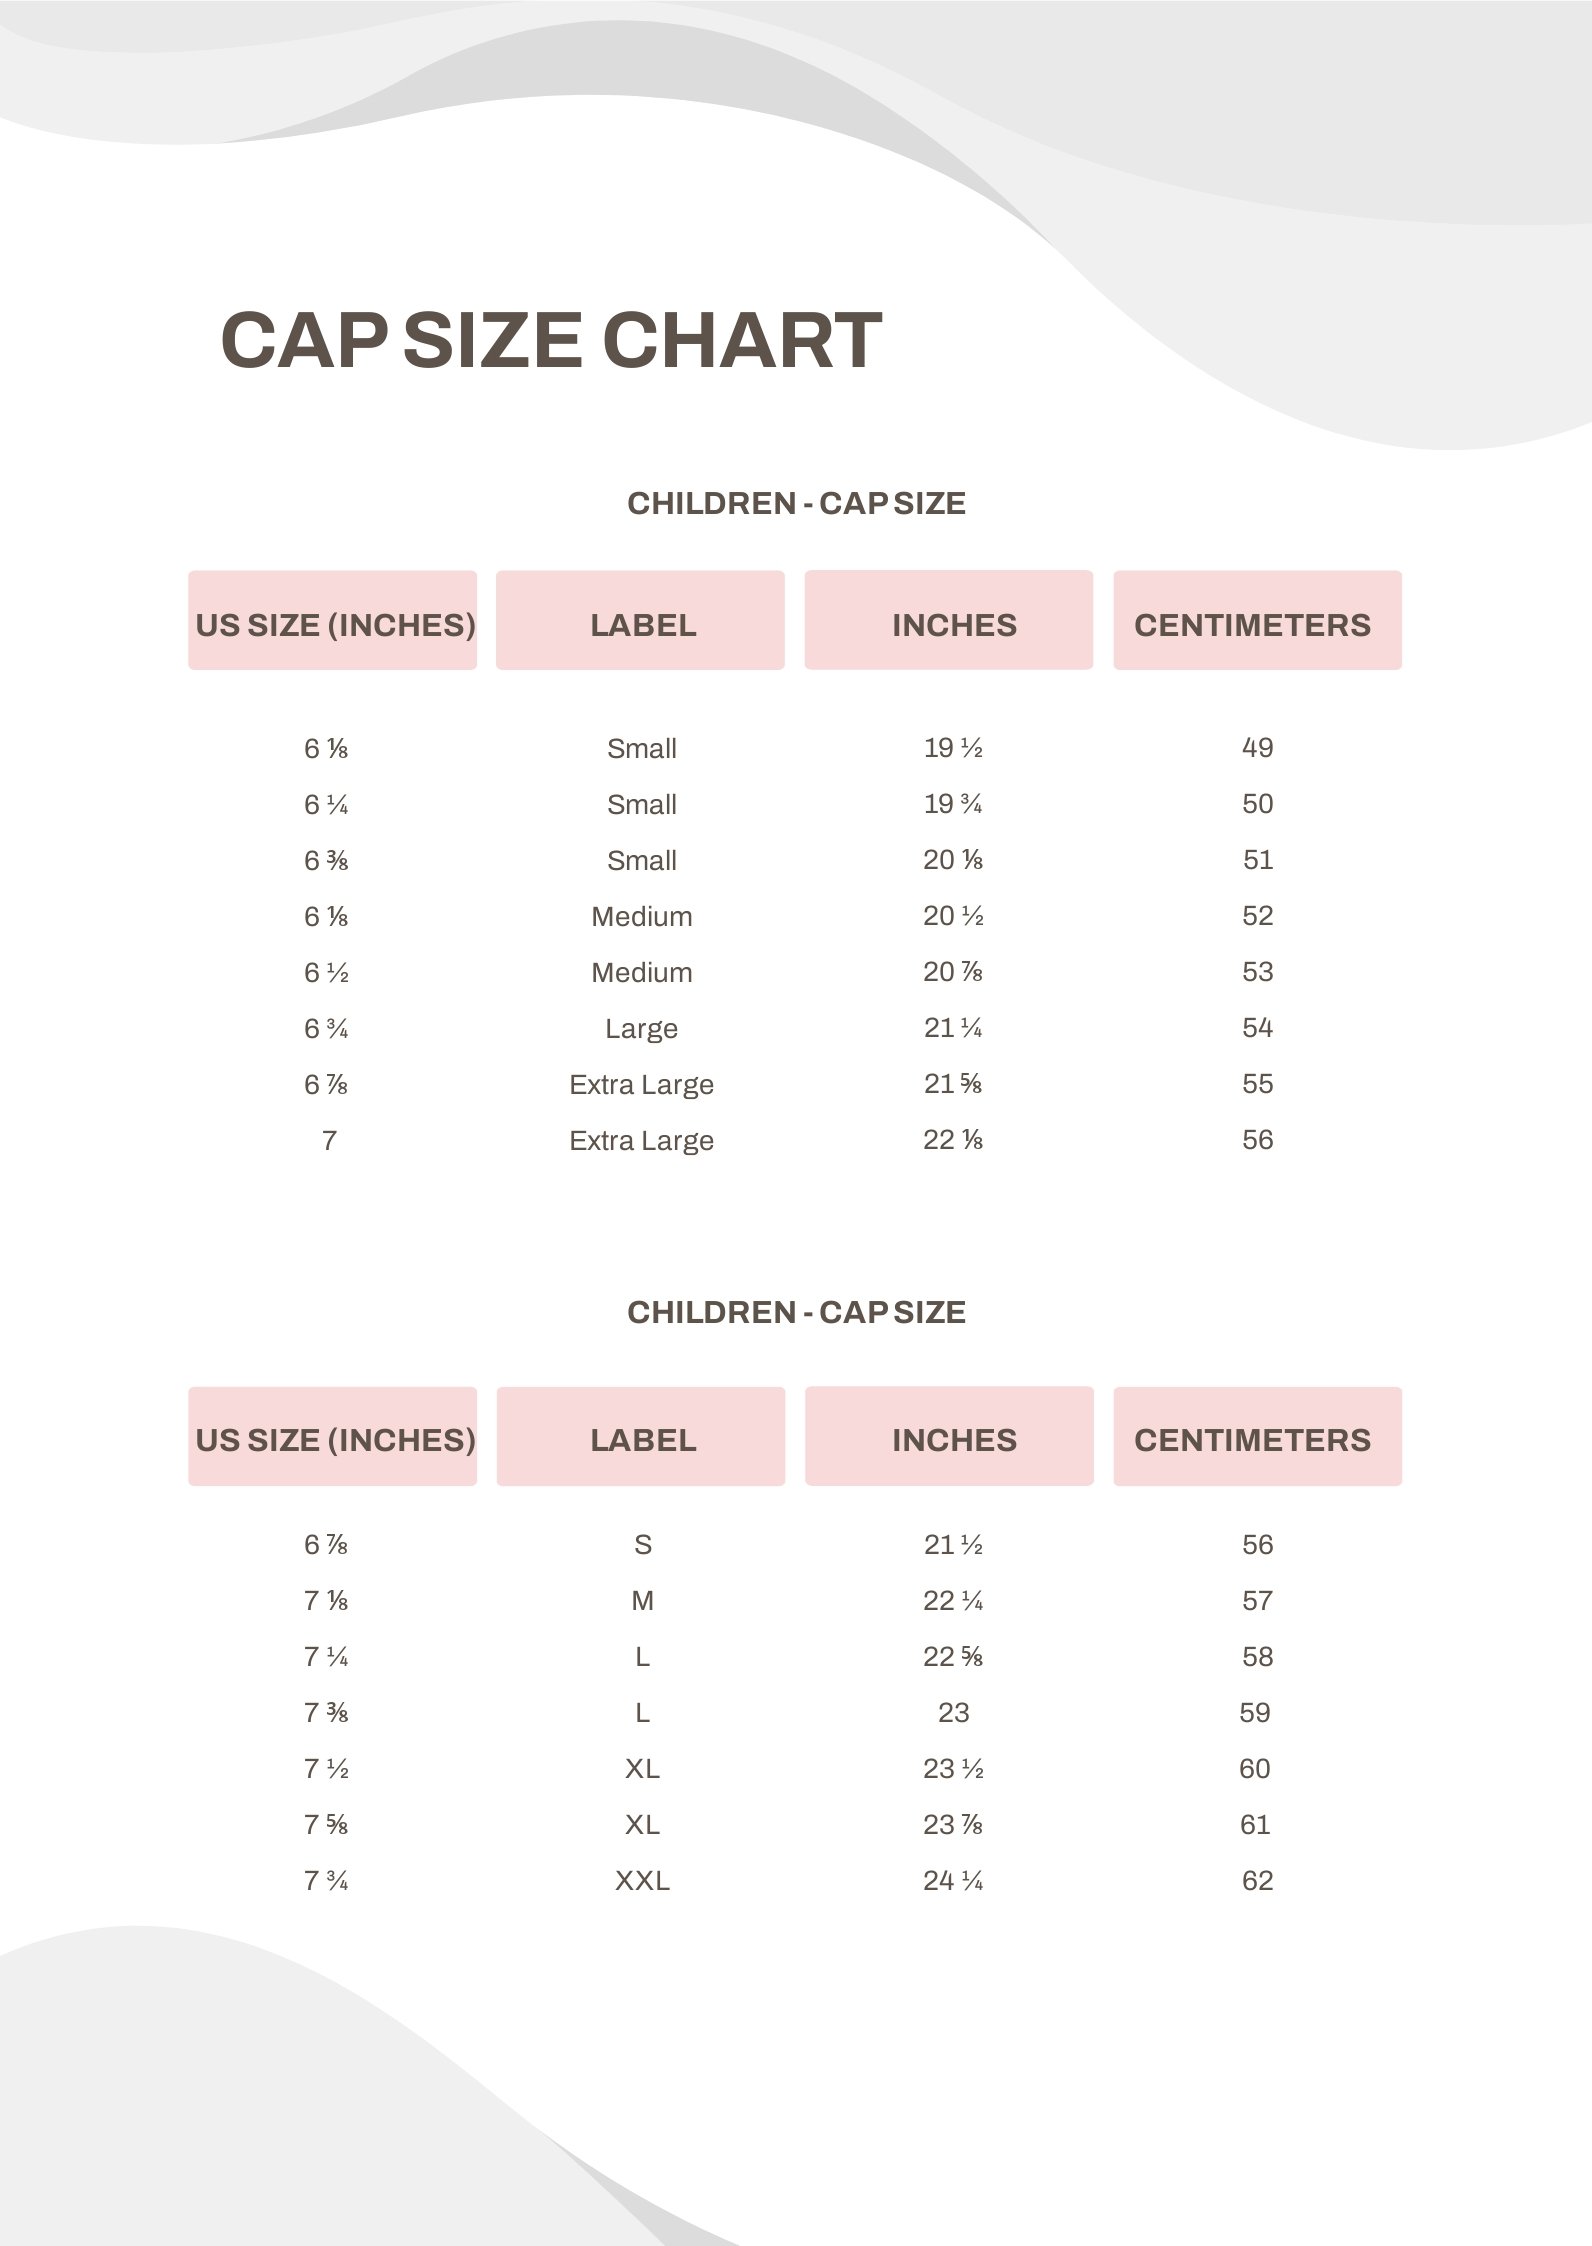 Cap Size Chart in PDF